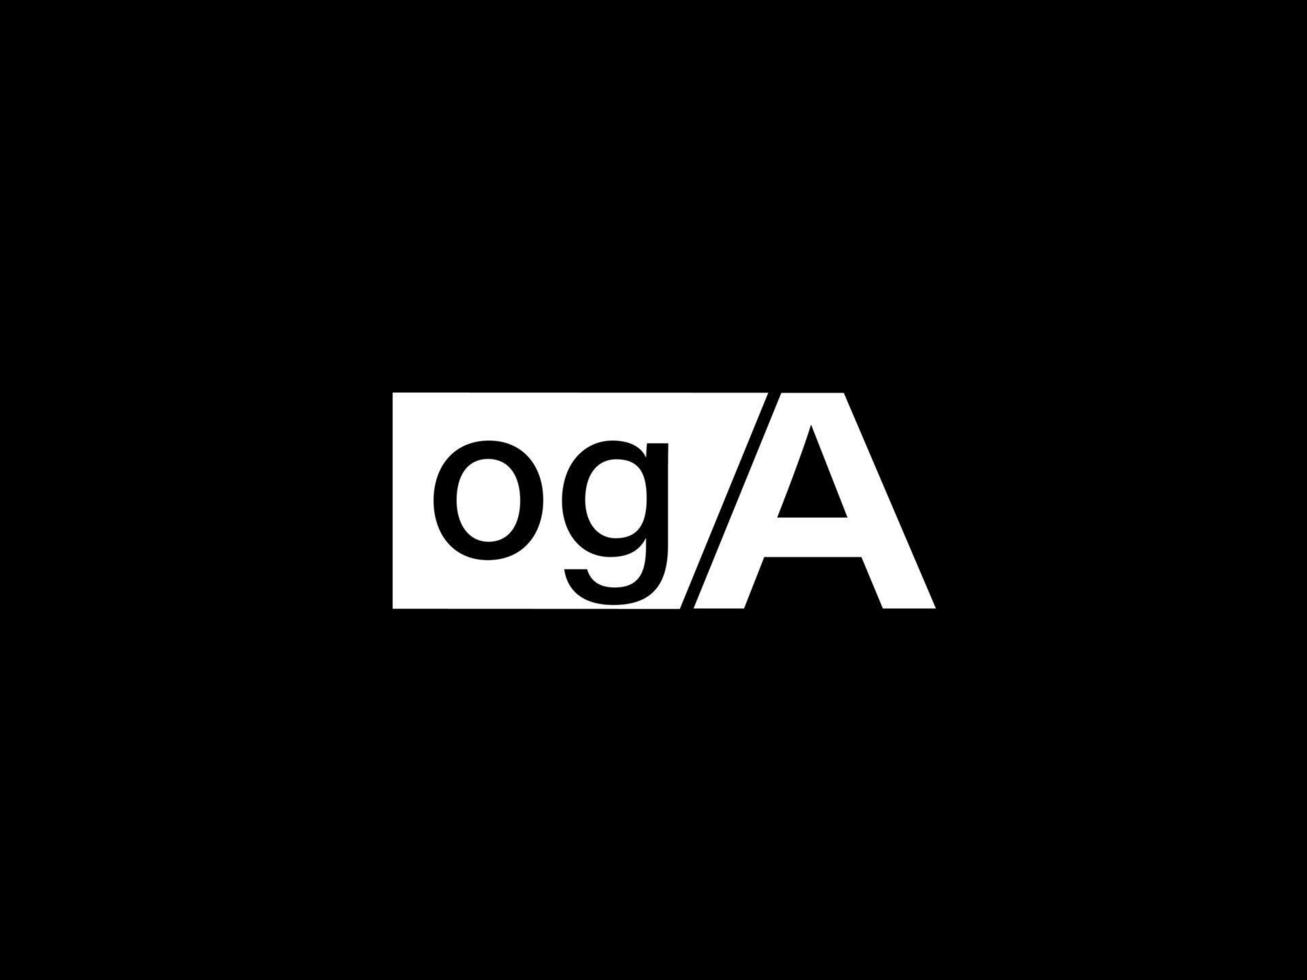 arte vetorial de design gráfico e logotipo oga, ícones isolados em fundo preto vetor